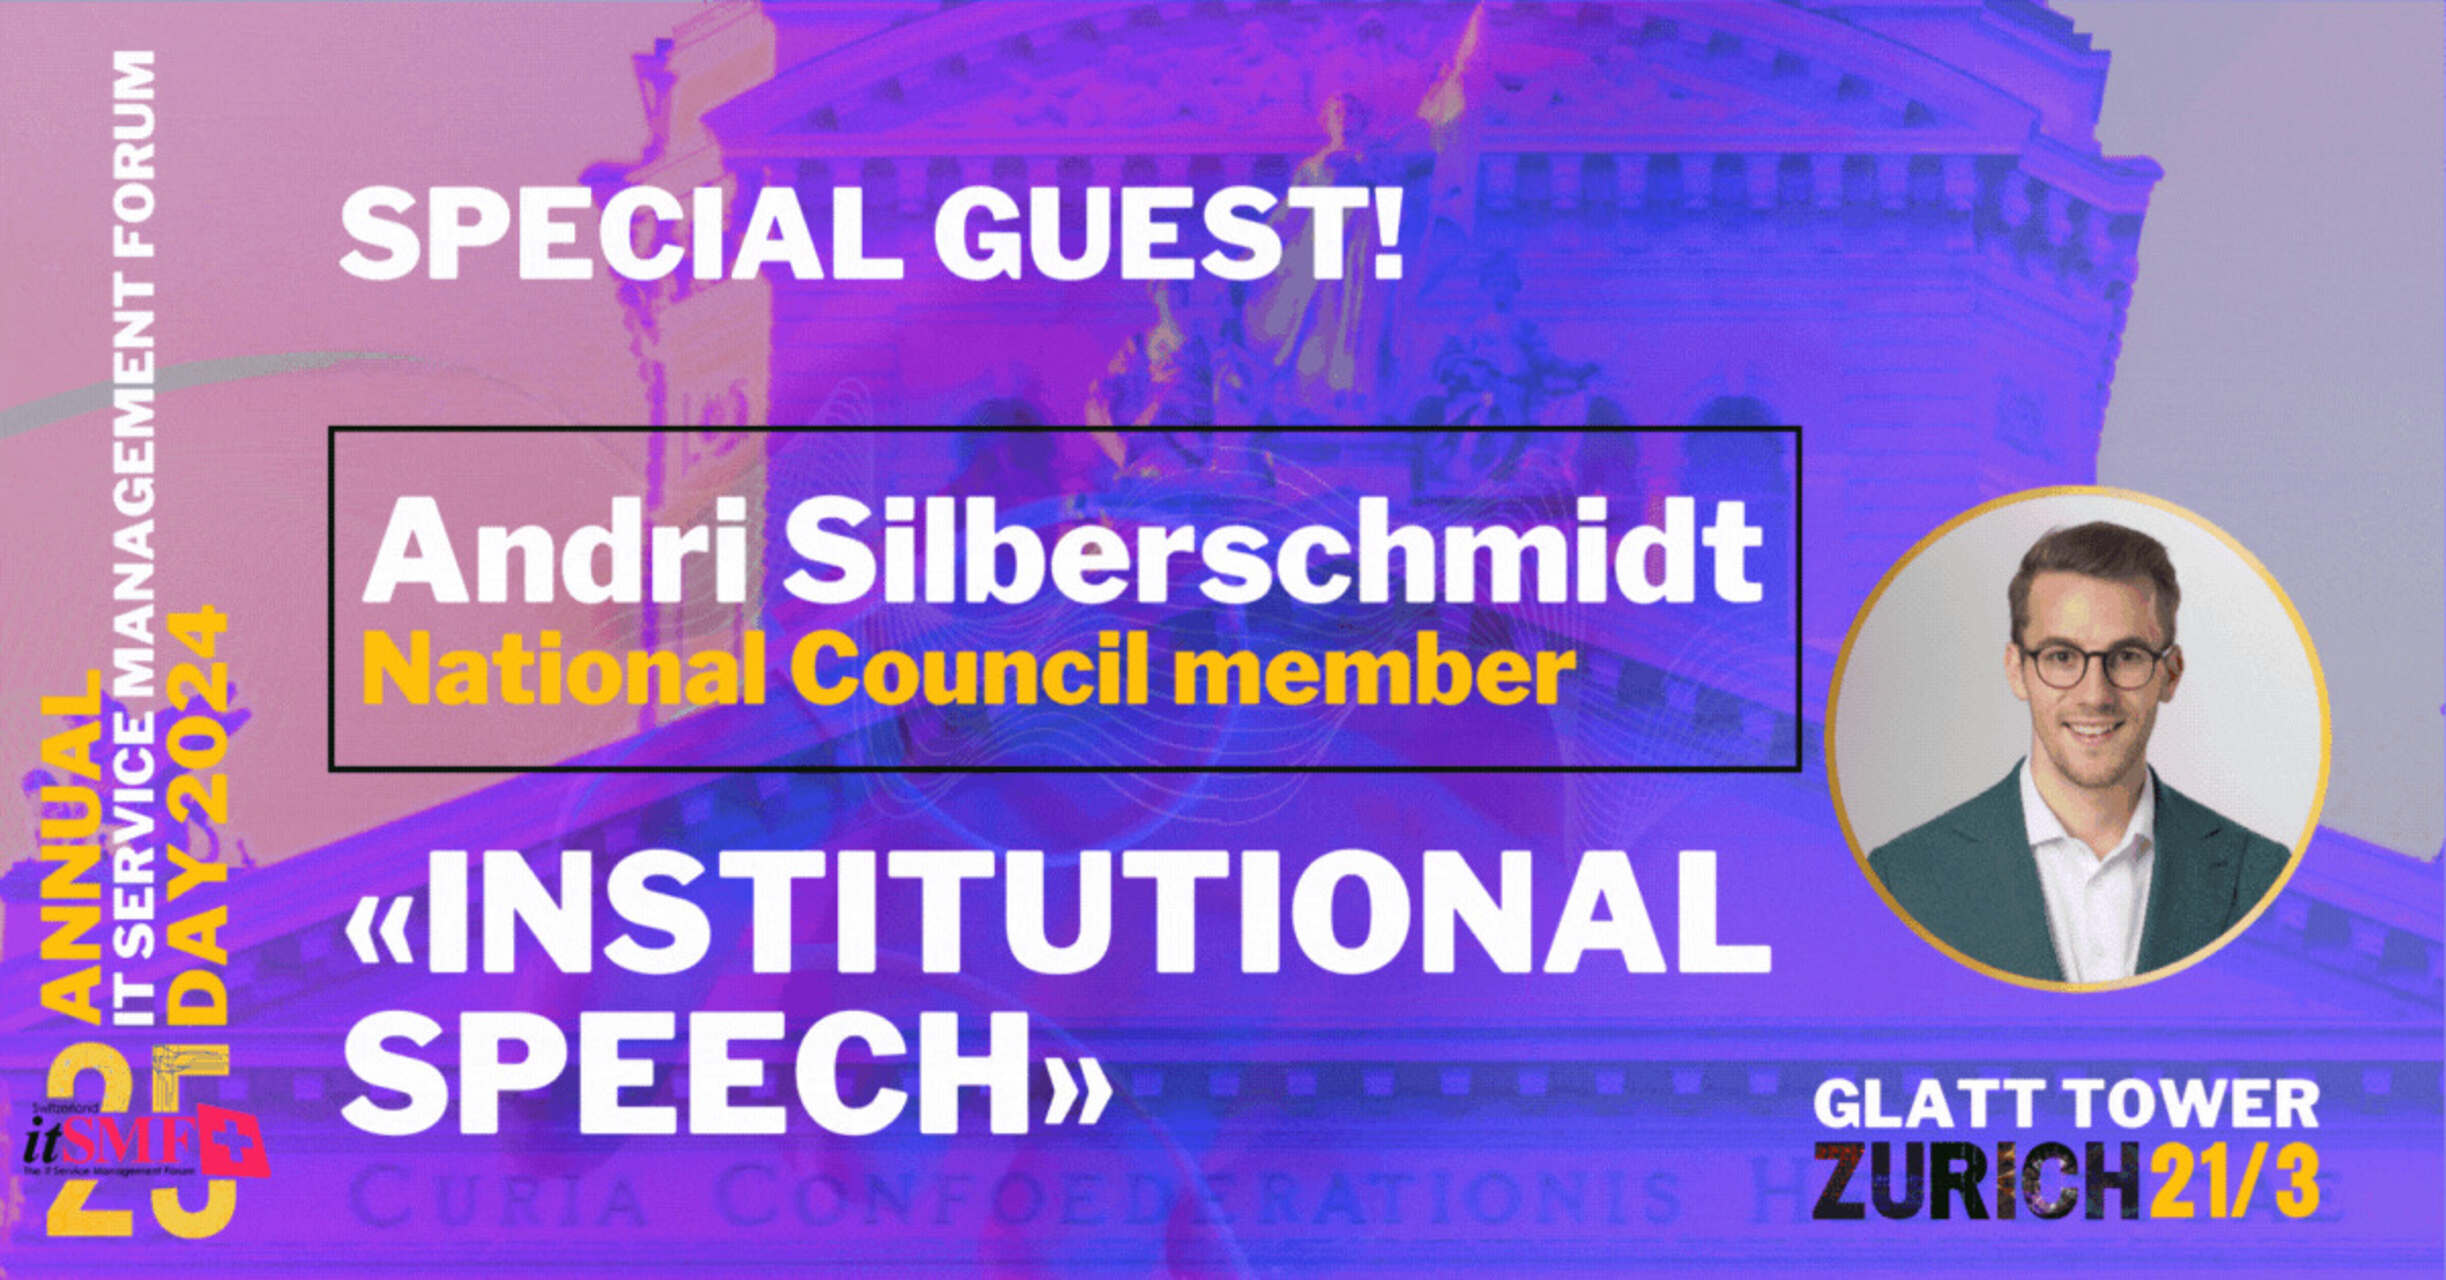 Менаџмент услуга: Андри Силбершмит, предузетник и члан Швајцарског националног савета, одржаће институционални говор на годишњем догађају итСМФ у Цирих-Валиселену 21. марта 2024.